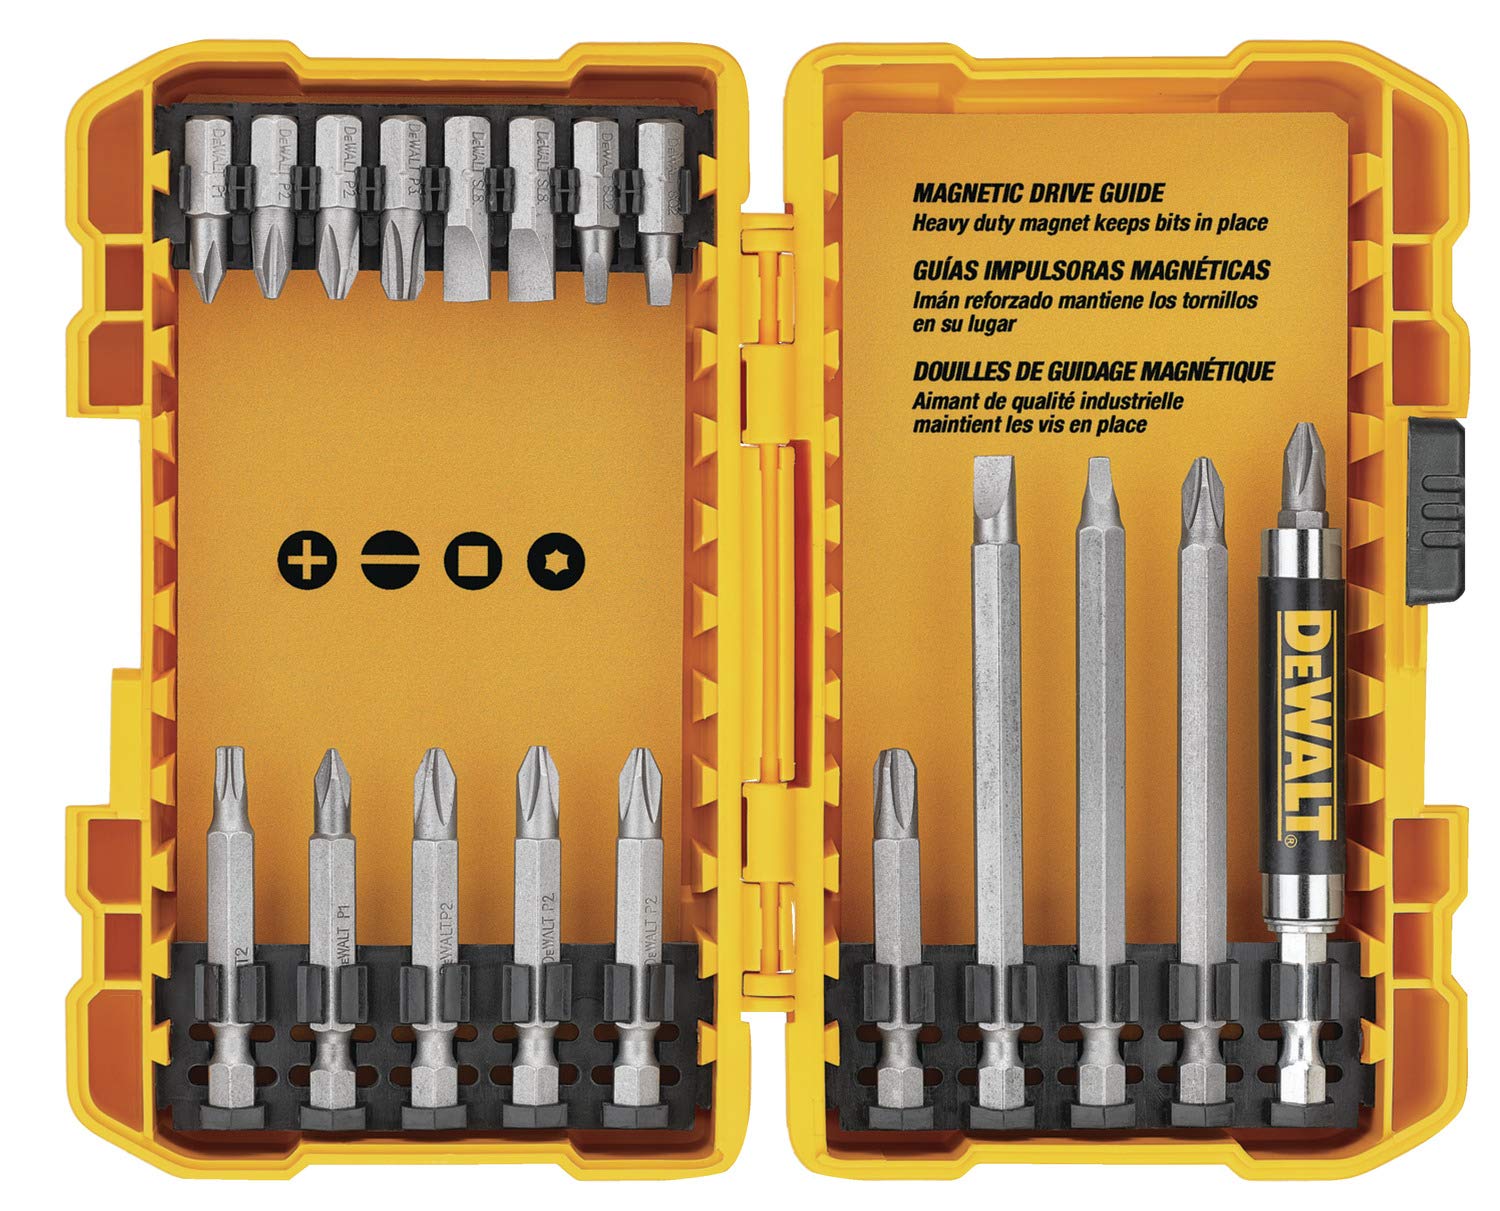 DEWALT 20V MAX* Cordless Drill/Driver Kit with Screwdriver/Drill Bit Set, 100-Piece (DCD771C2 & DWA2FTS100)